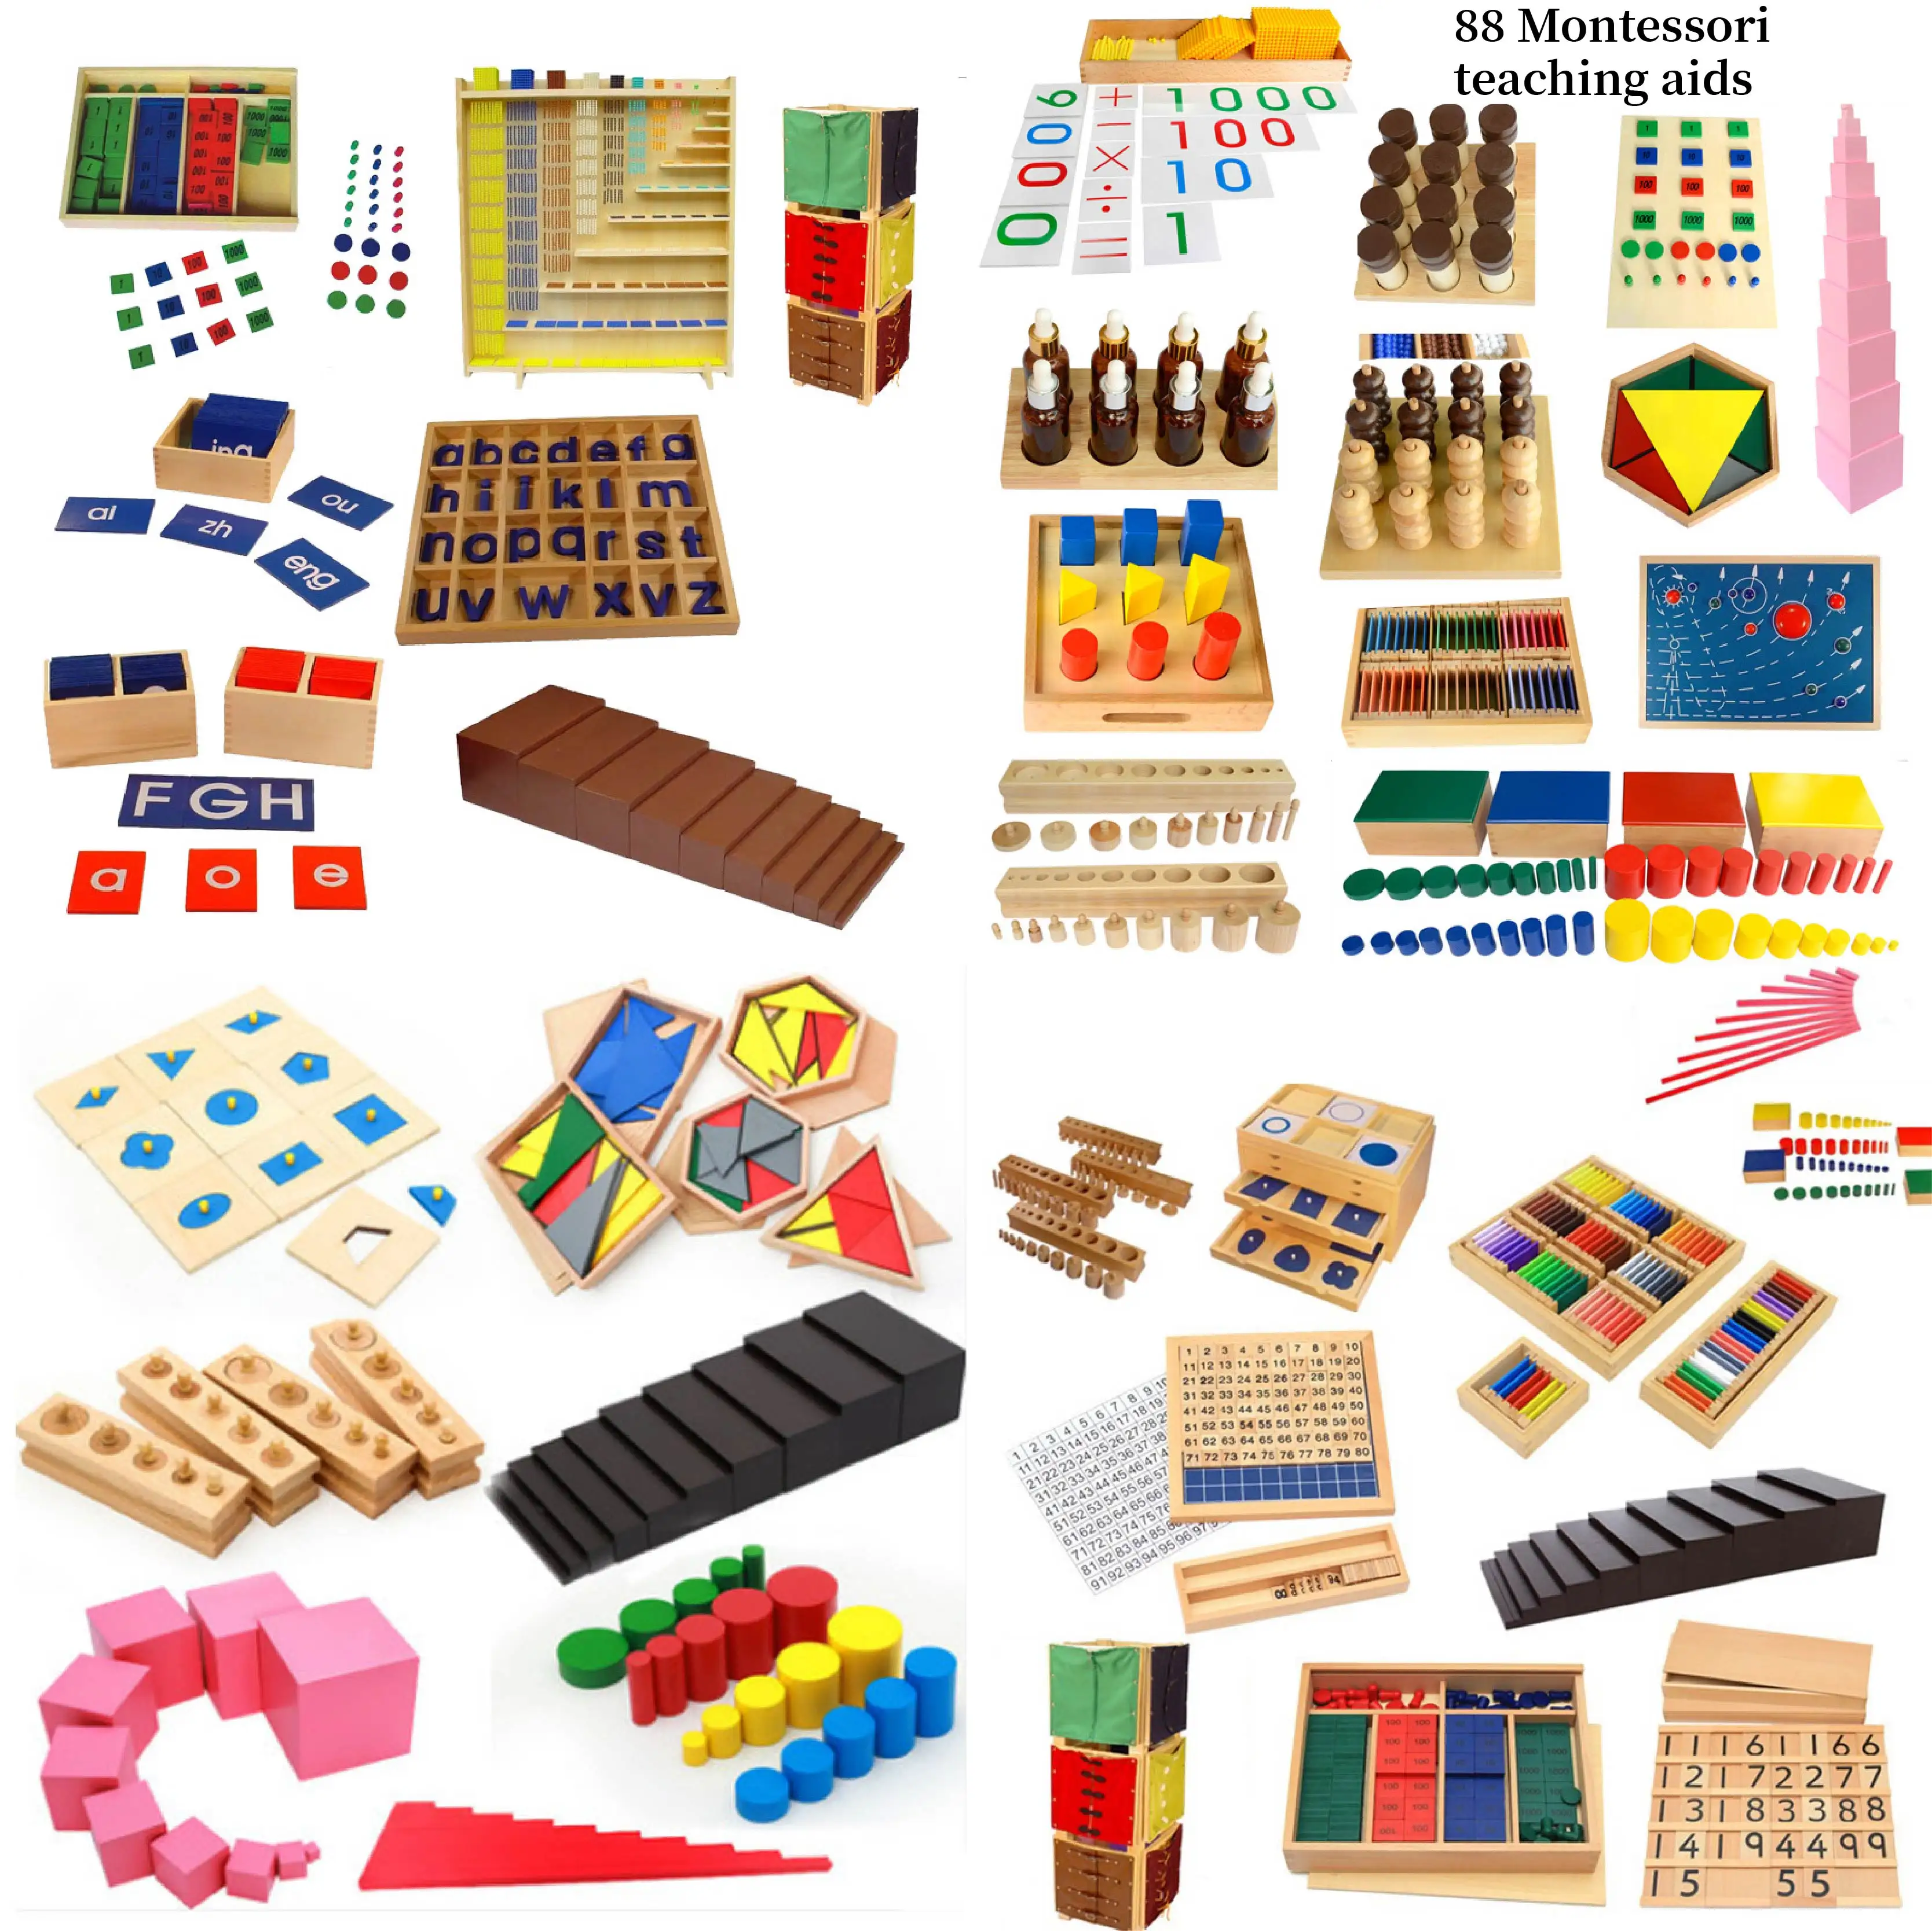 Muebles de madera de primera calidad Montessori para Aprendizaje de bebé, materiales para guardería, otros juguetes sensoriales educativos, juegos para niños